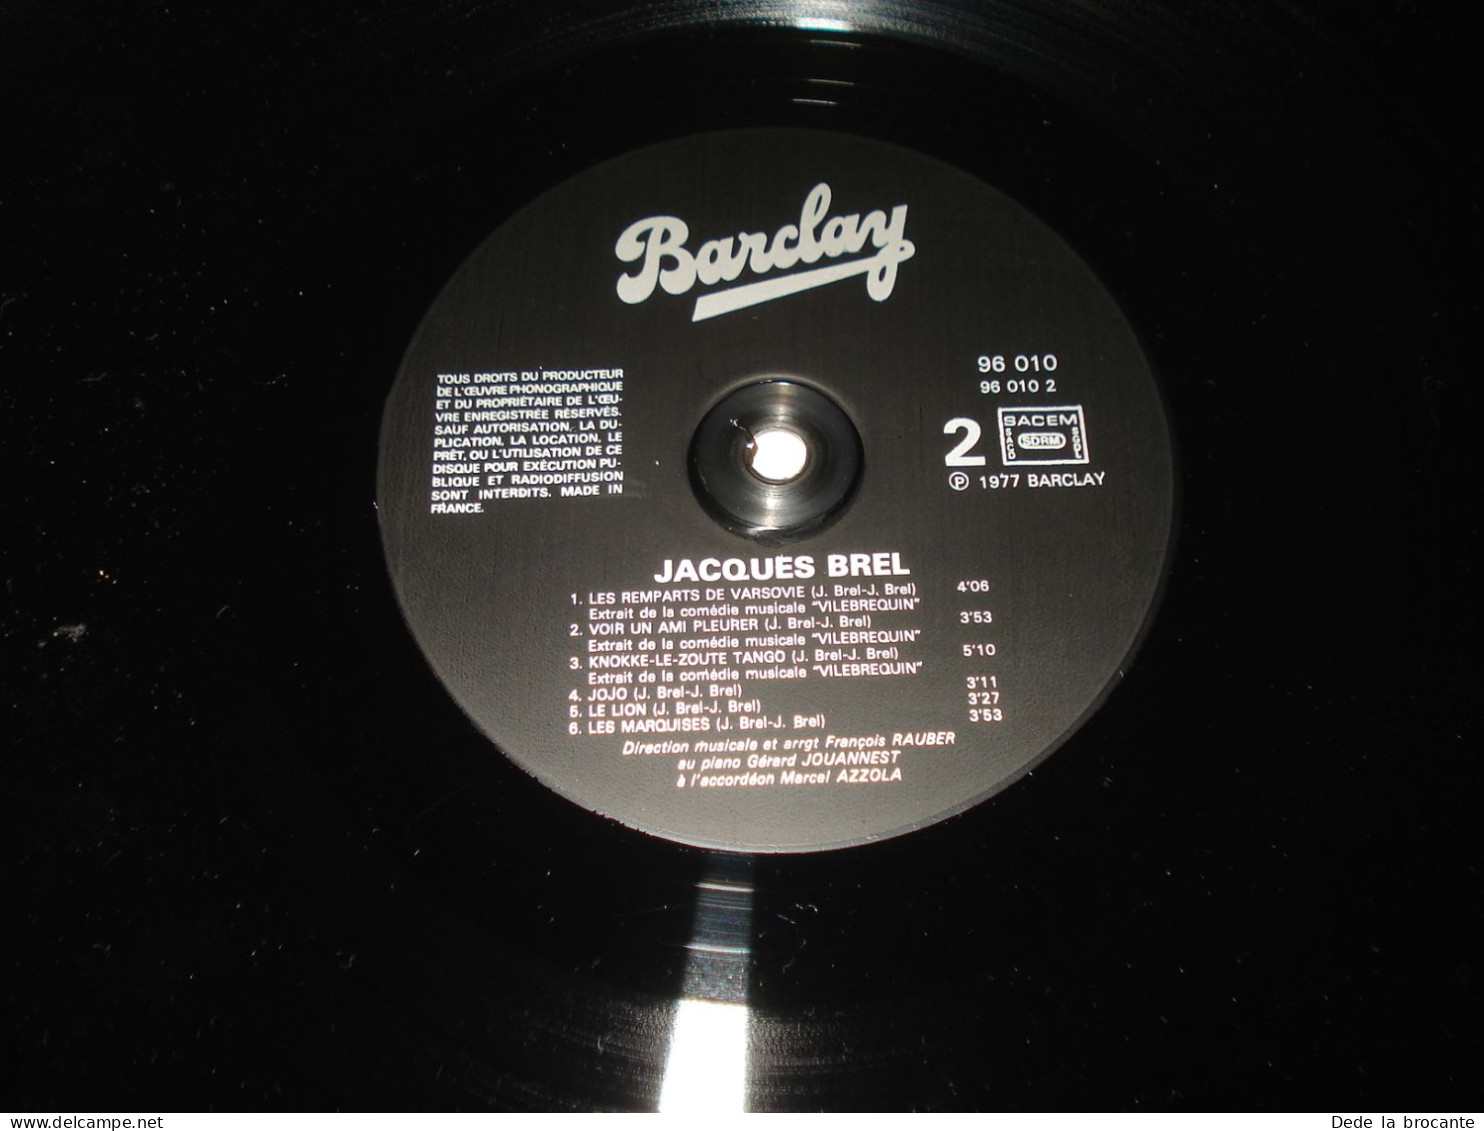 B14 / Jacques Brel – LP - Barclay – 96 010 - Fr  1977  NM/NM